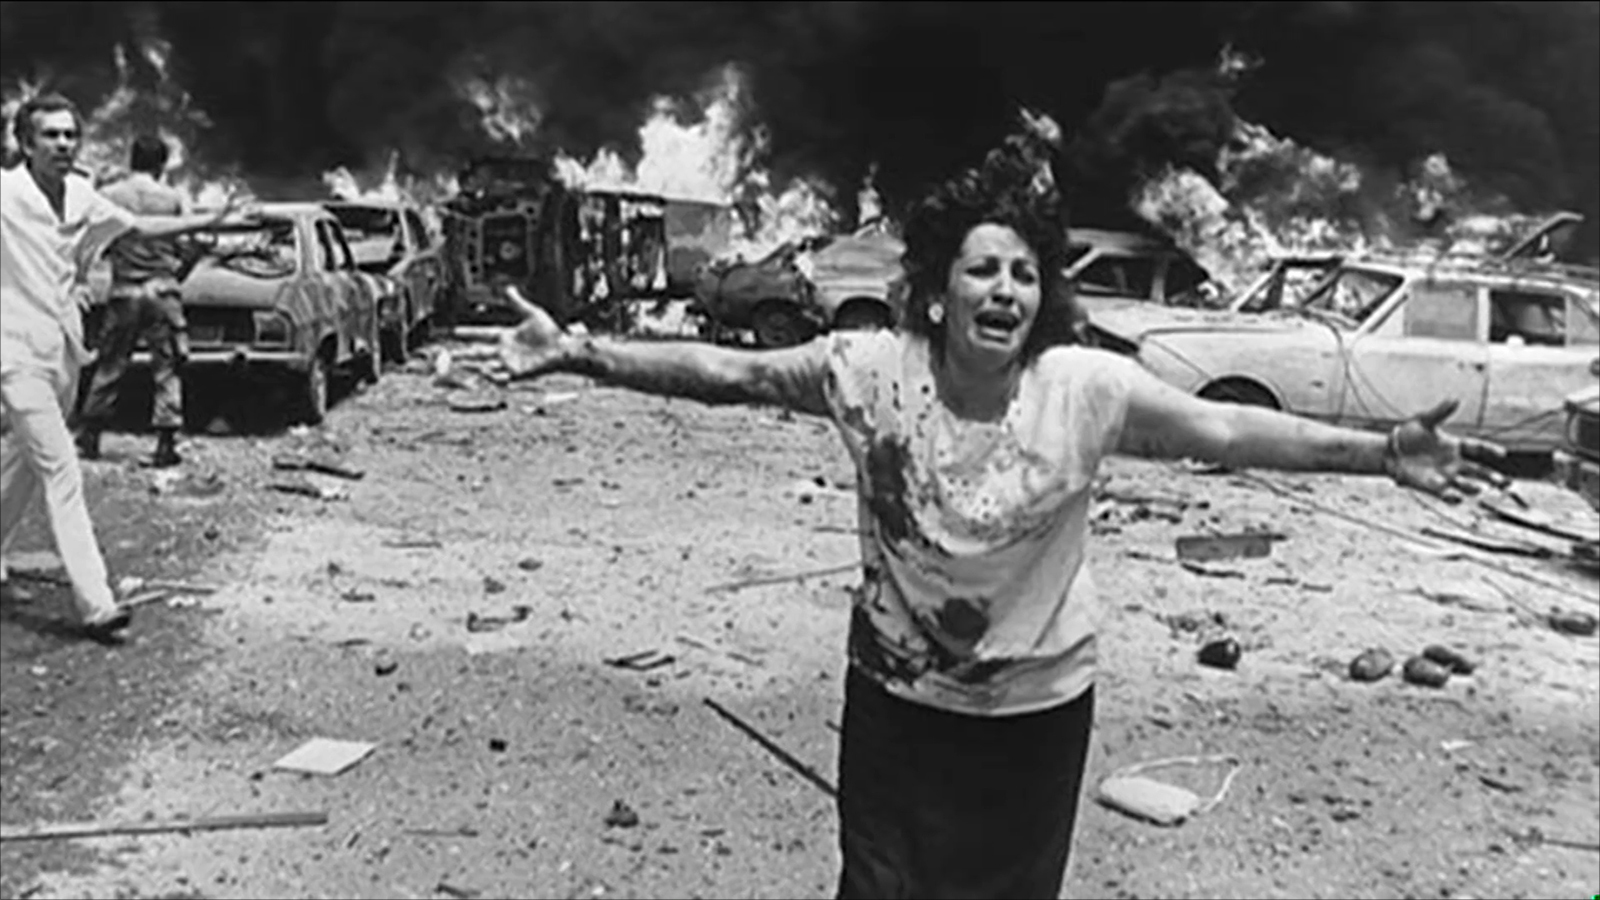 الحرب الأهلية اللبنانية استمرت 15 عاما وبلغت خسائرها البشرية نحو 150 ألف قتيل